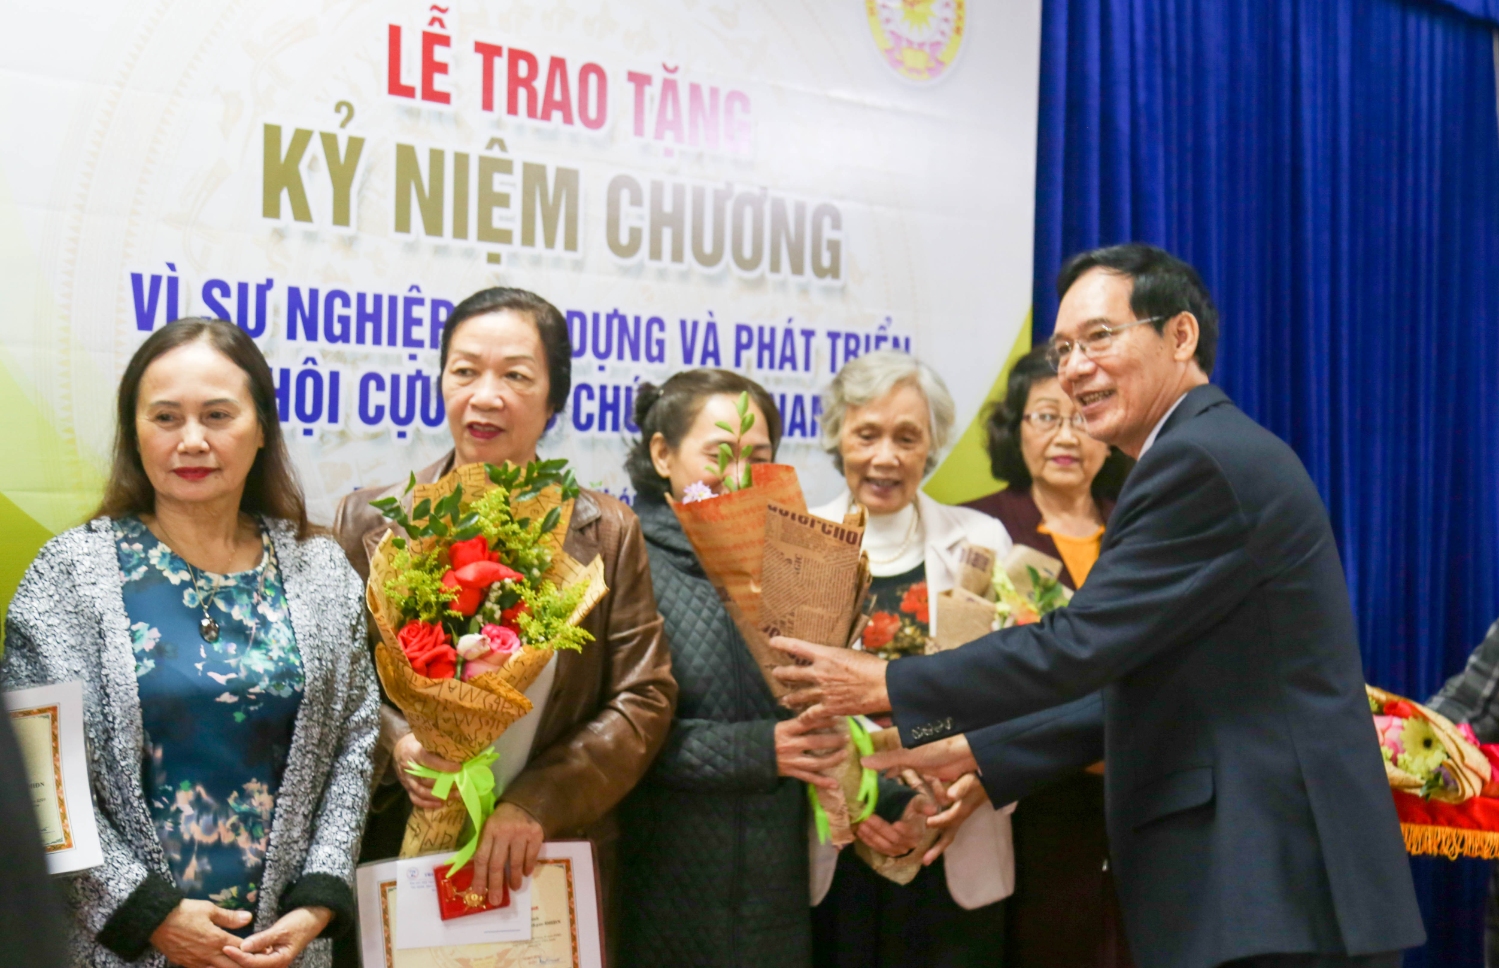 Lễ trao tặng kỷ niệm chương "Vì sự nghiệp xây dựng và phát triển hội Cựu giáo chức Việt Nam"